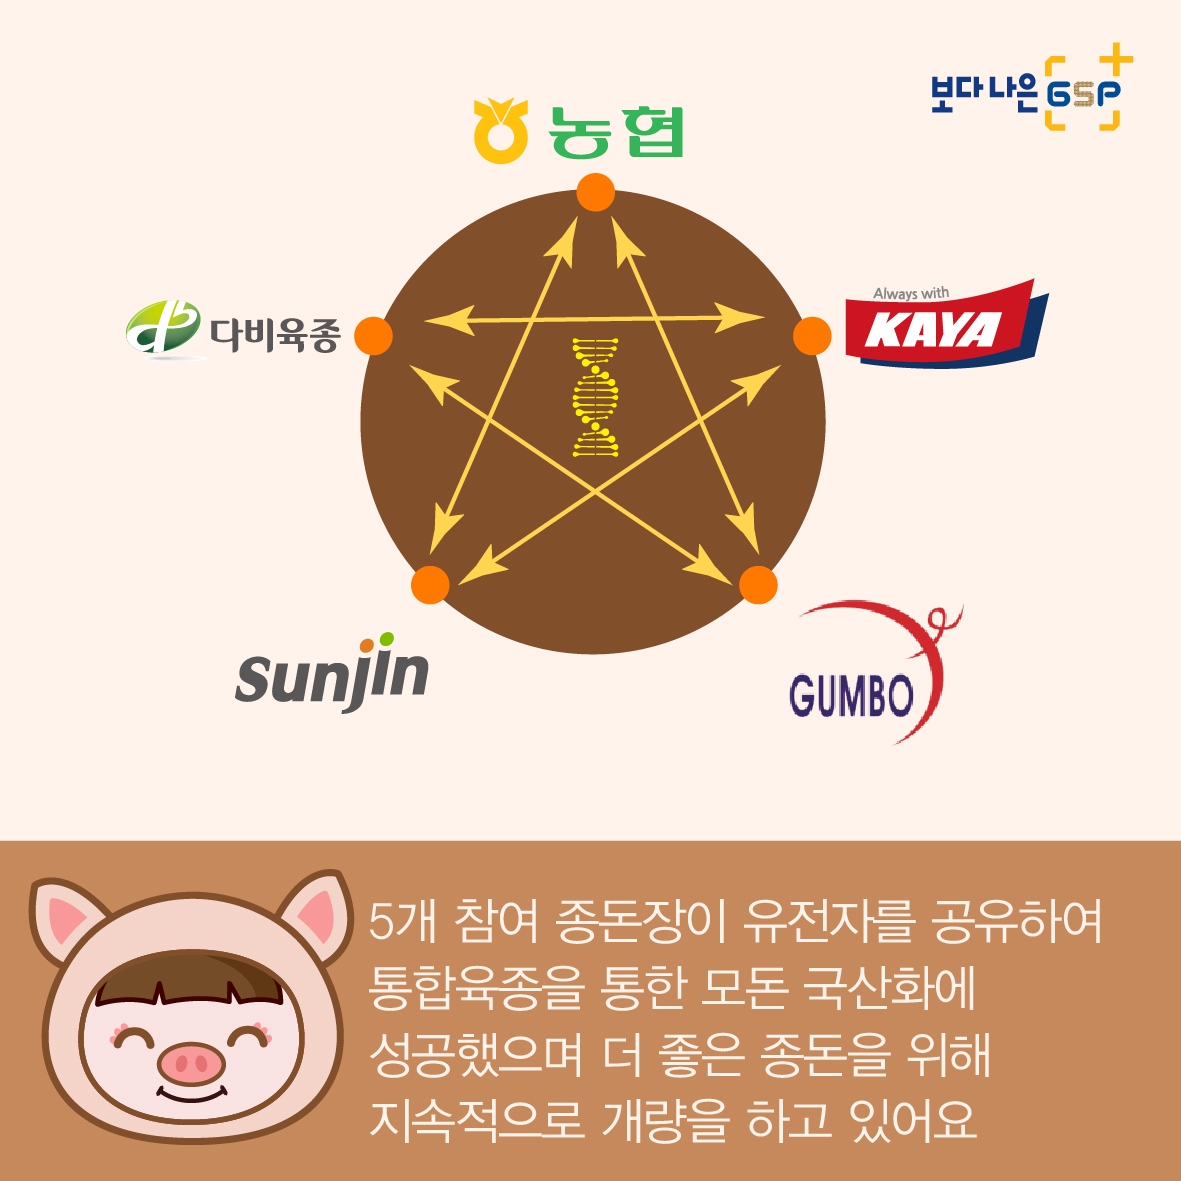 친절한 종자씨와 함께하는 GSP 품종뉴스 - 종돈편 카드뉴스_종돈편-05.jpg